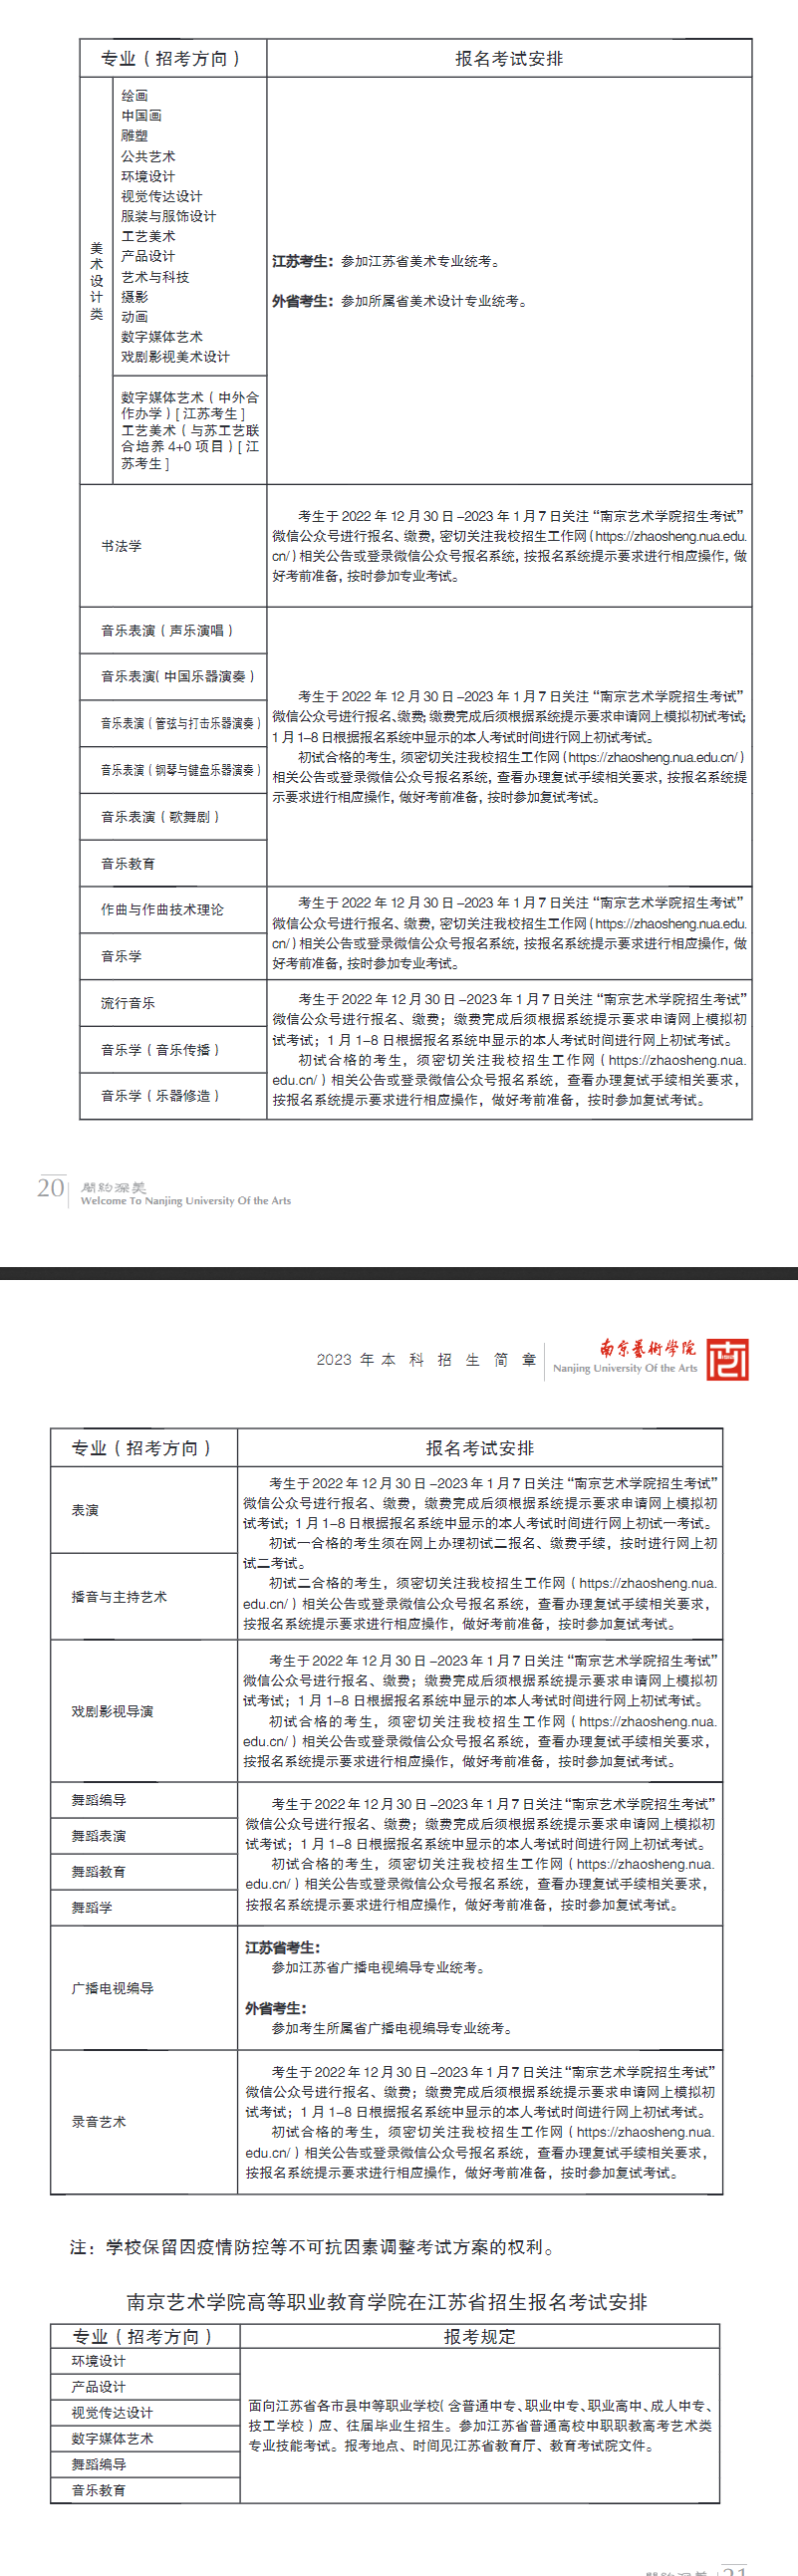 2023南京艺术学院校考考试科目及内容 什么时候考试